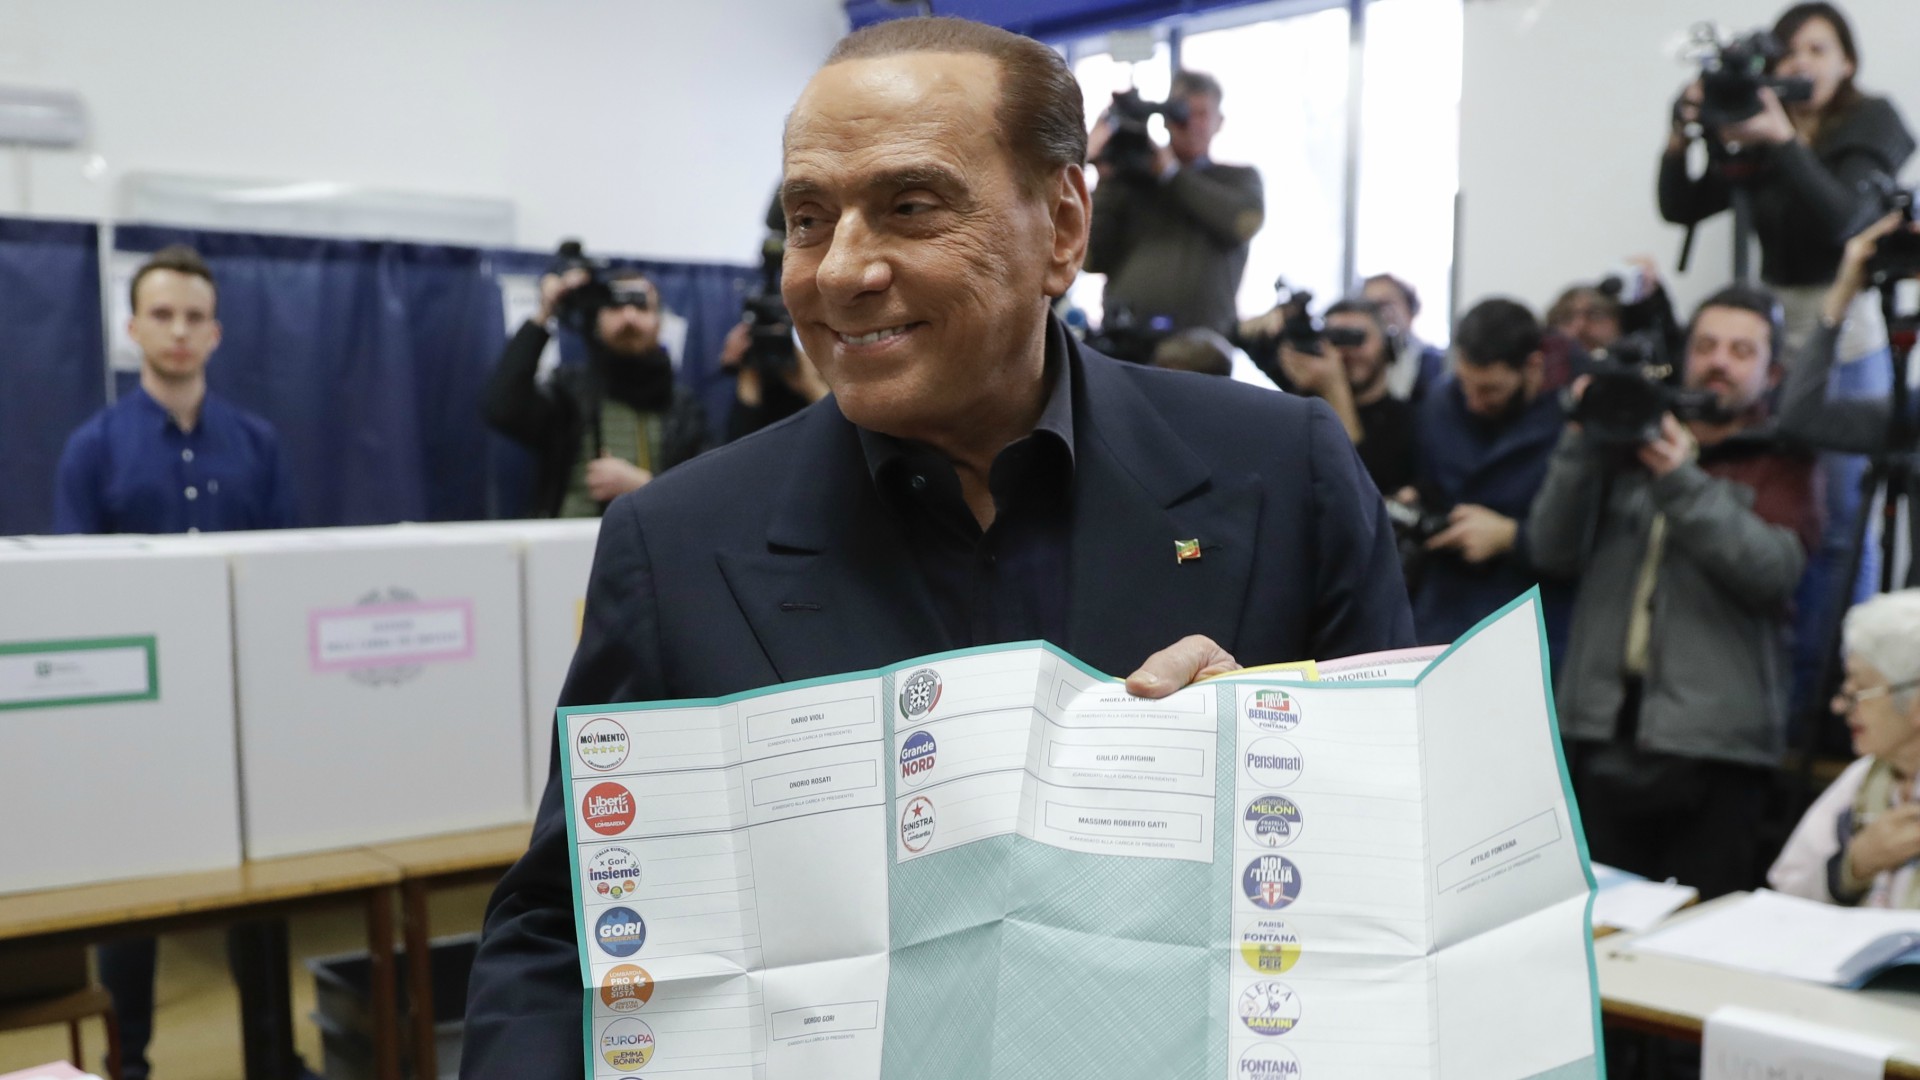 La derecha gana las elecciones italianas, según las encuestas a pie de urna